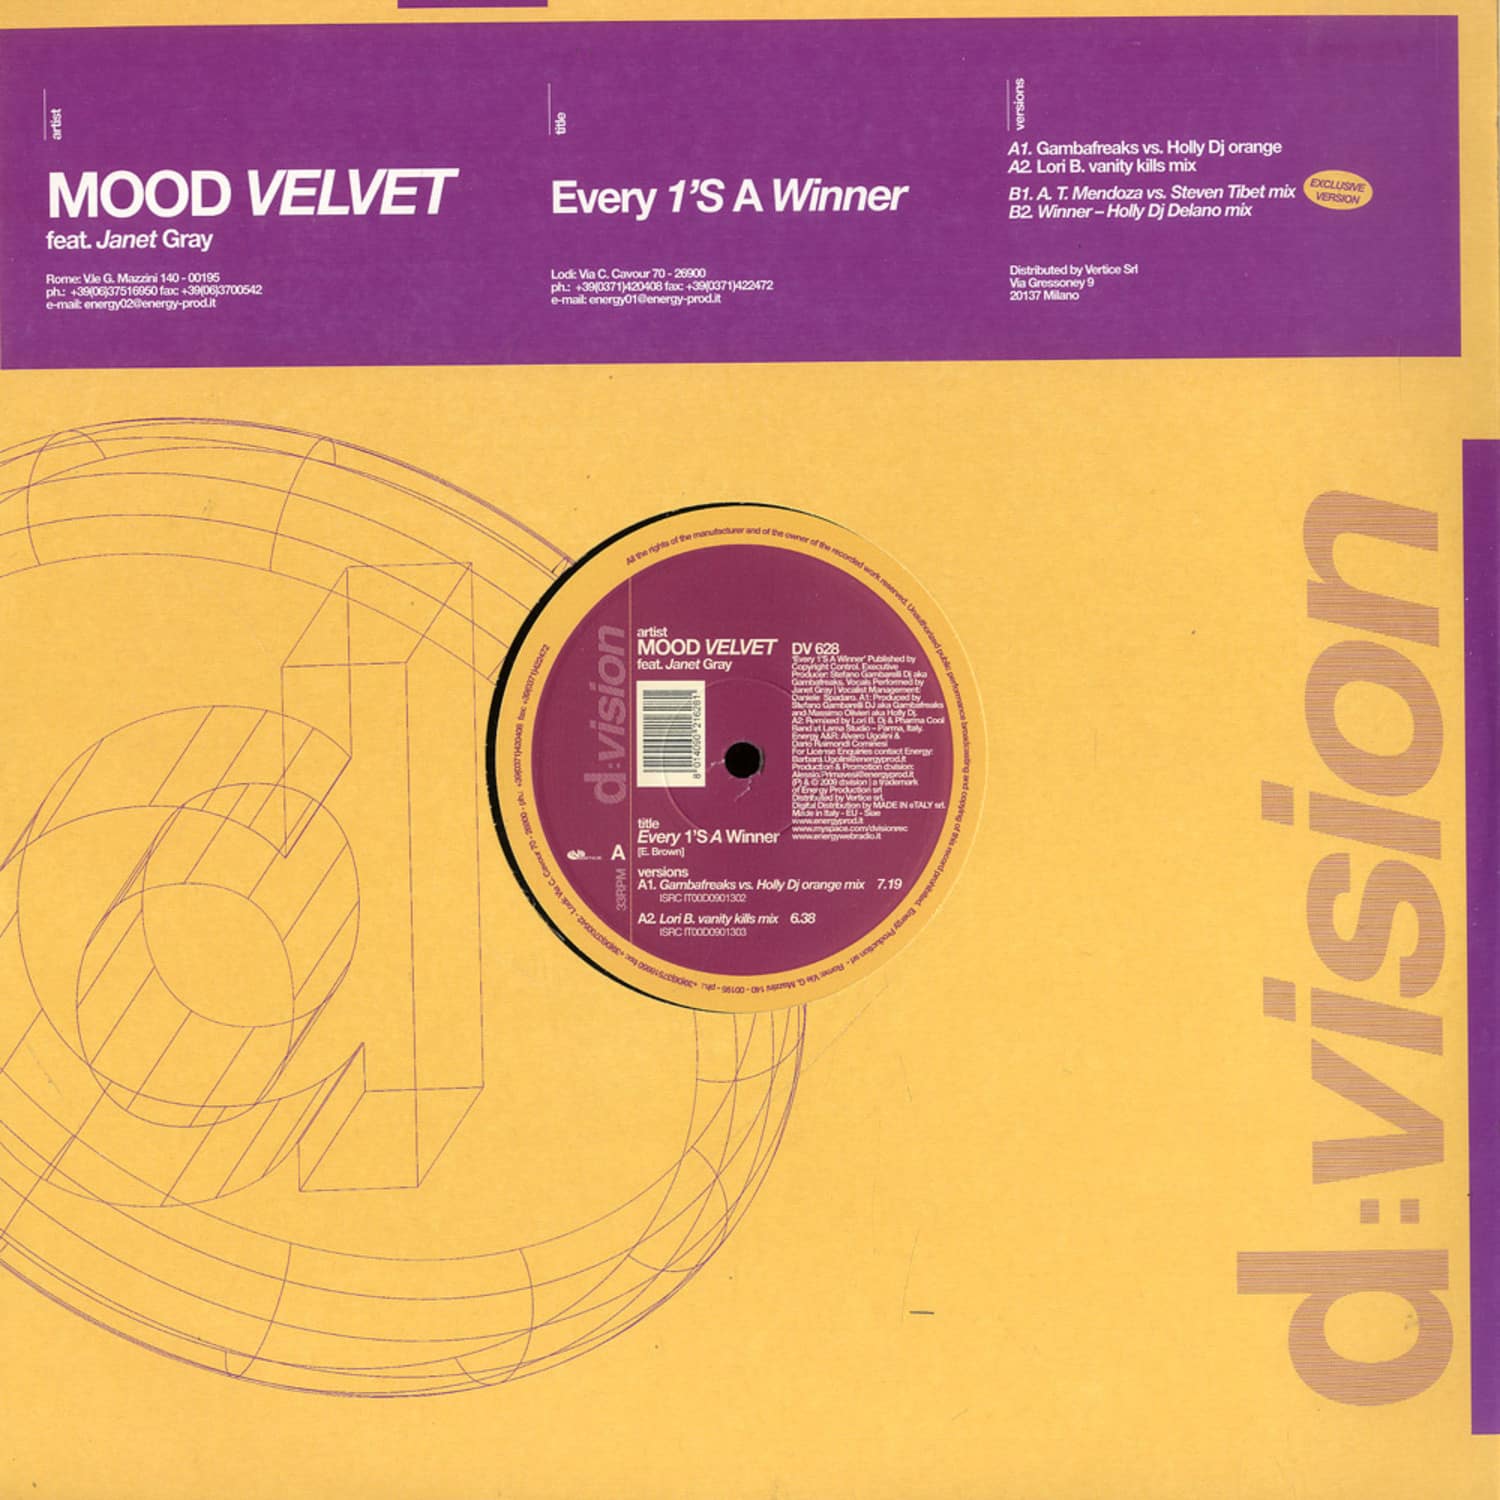 Mood Velvet Feat. Janet Gray - EVERY 1 S A WINNER